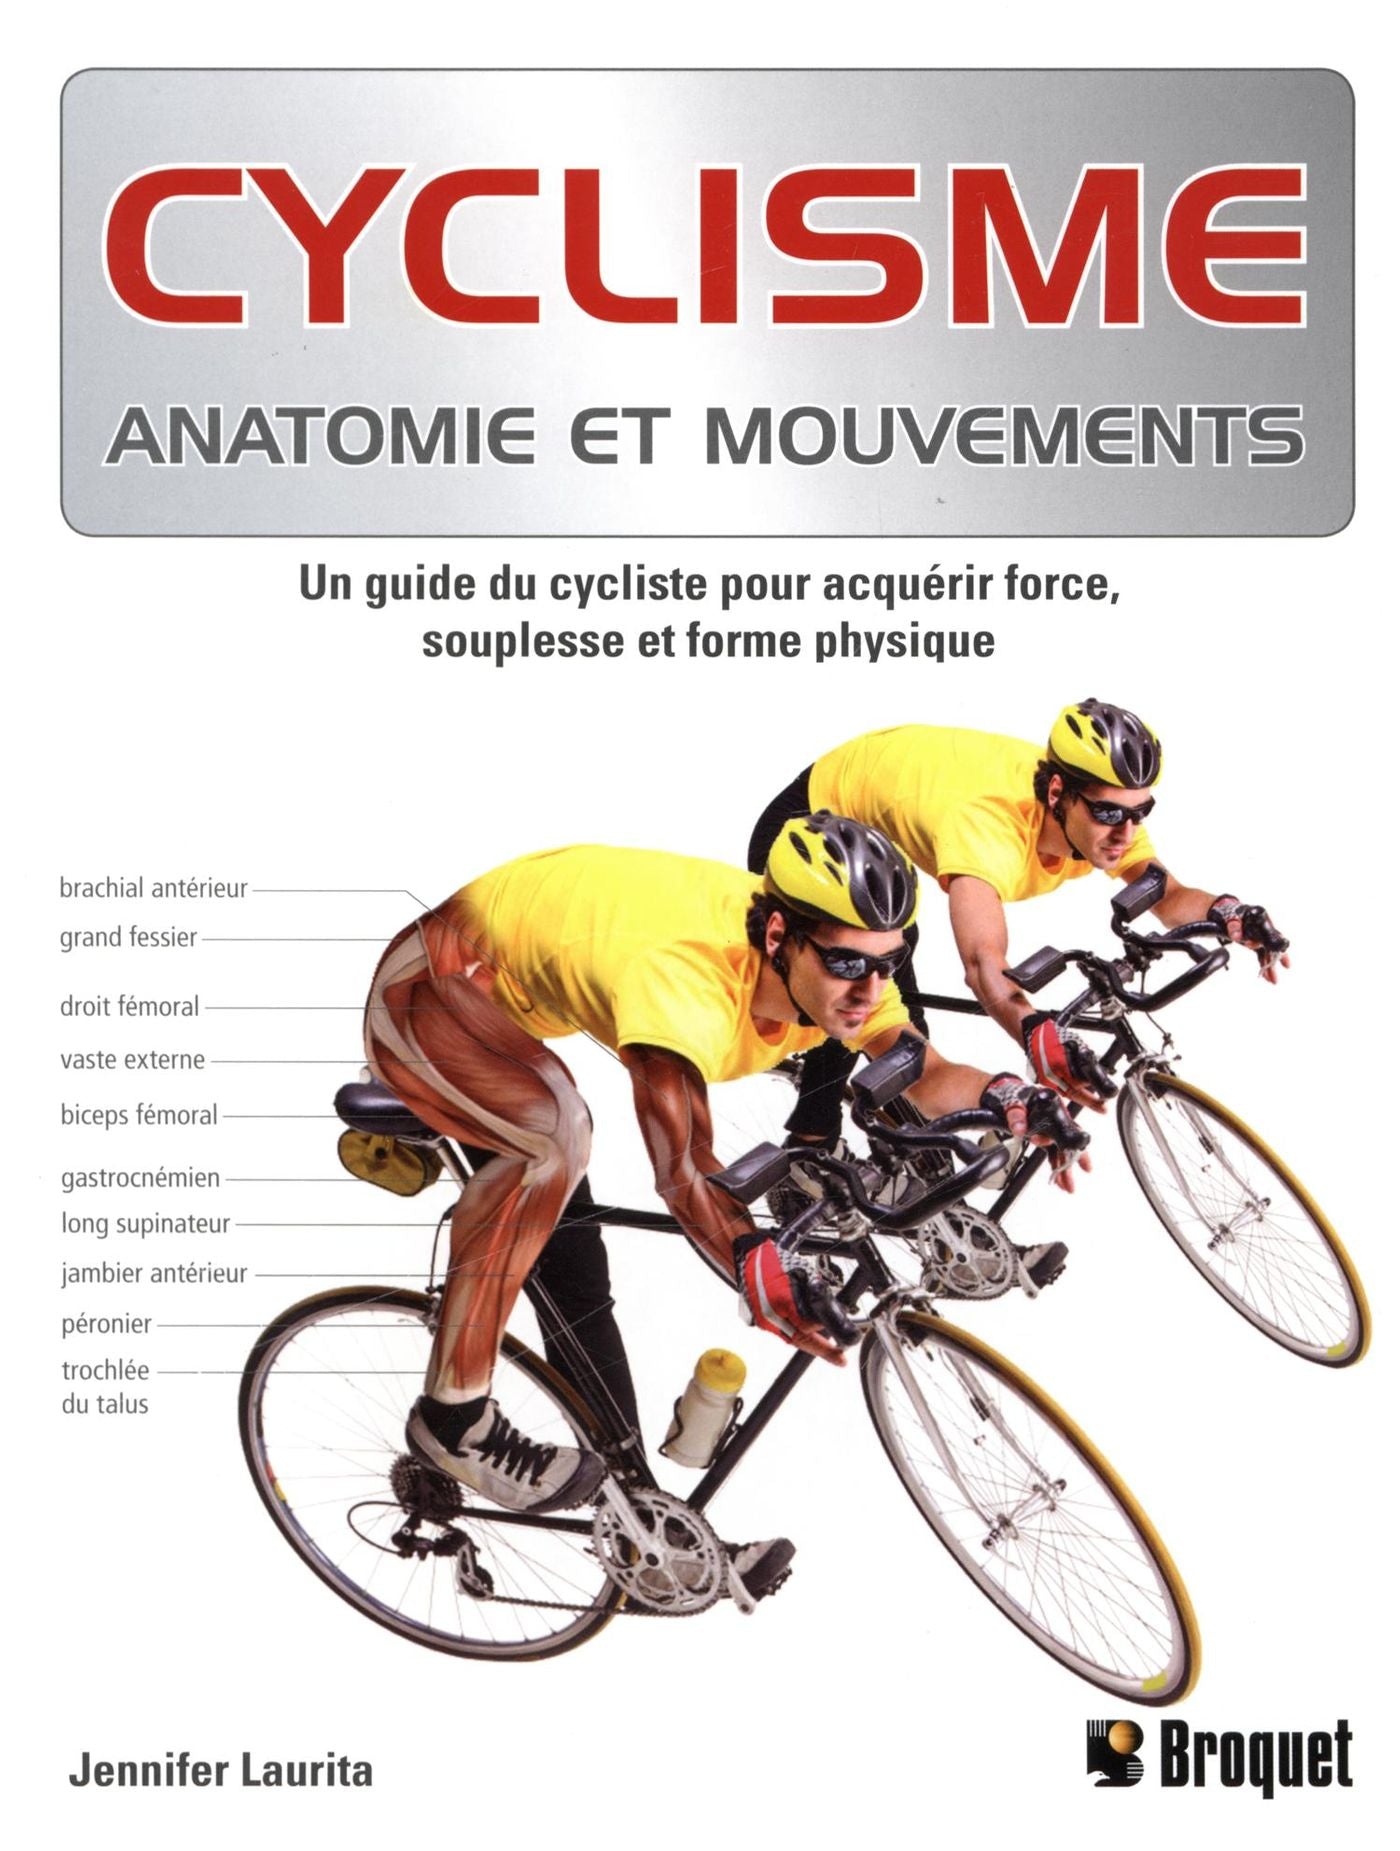 Cyclisme : Anatomie et mouvements - Jennifer Laurita